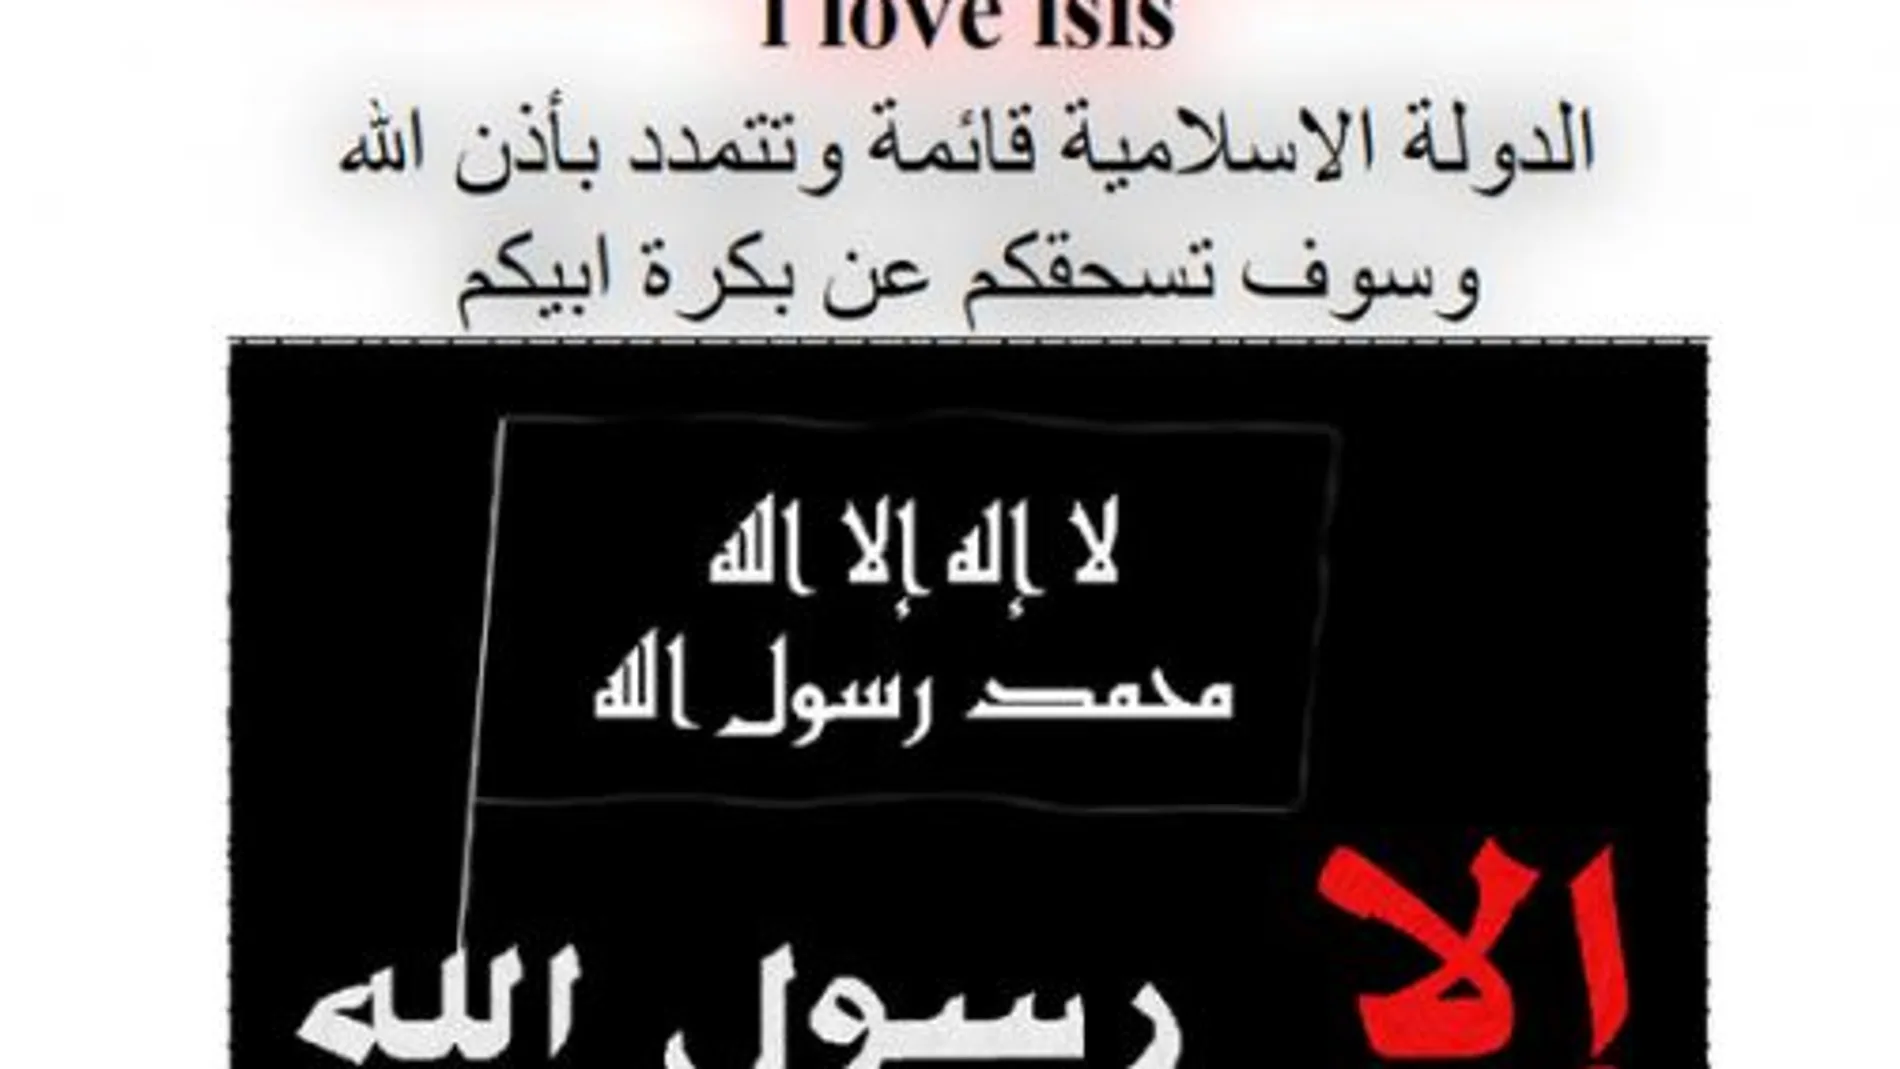 Hackean con frases yihadistas las webs de varios ayuntamientos navarros